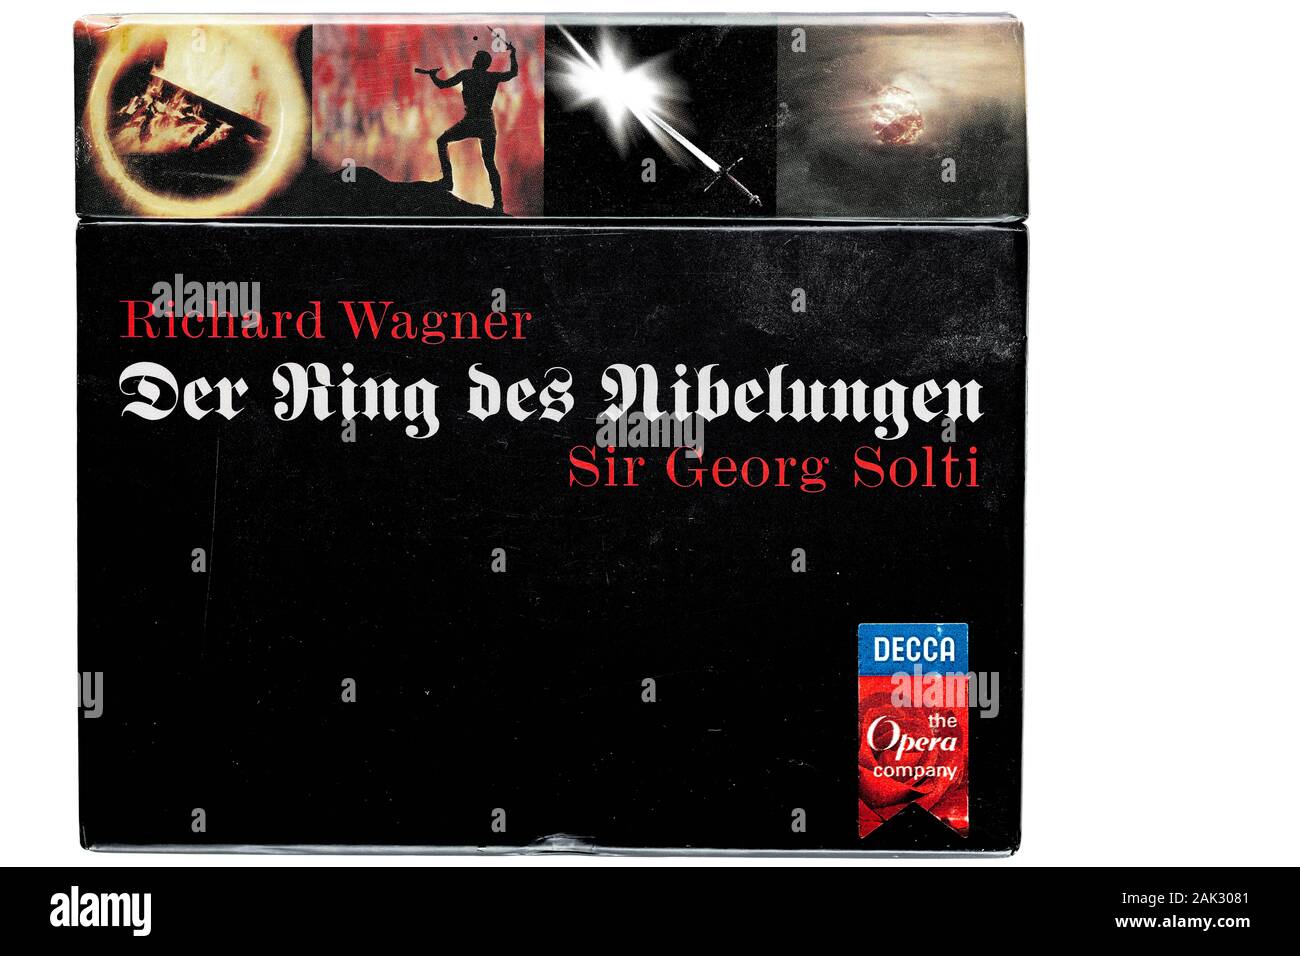 Abdeckung der Historischen Musik Aufnahme auf cd des Komponisten Wagner's Ring Zyklus durch die Wiener Philharmoniker unter Dirigent Solti. Stockfoto